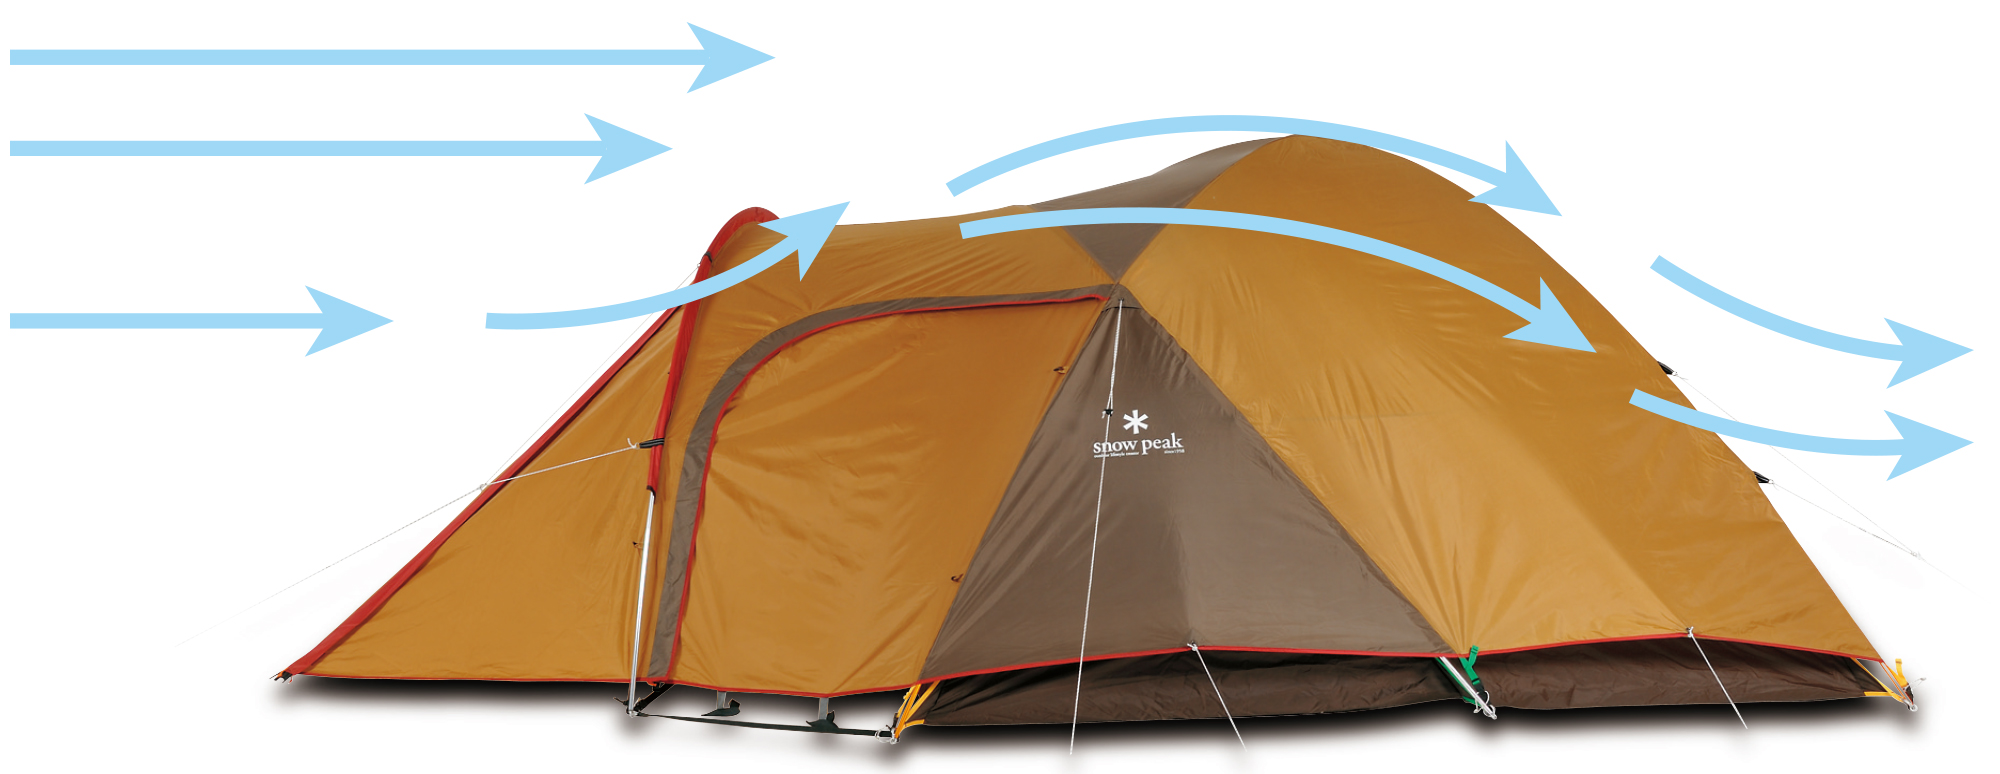 snow peak スノーピーク アメニティドームS テント シェルター | アウトドア・キャンプ| バッグ・アウトドア・キャンプ用品のUNBY  ONLINE STORE